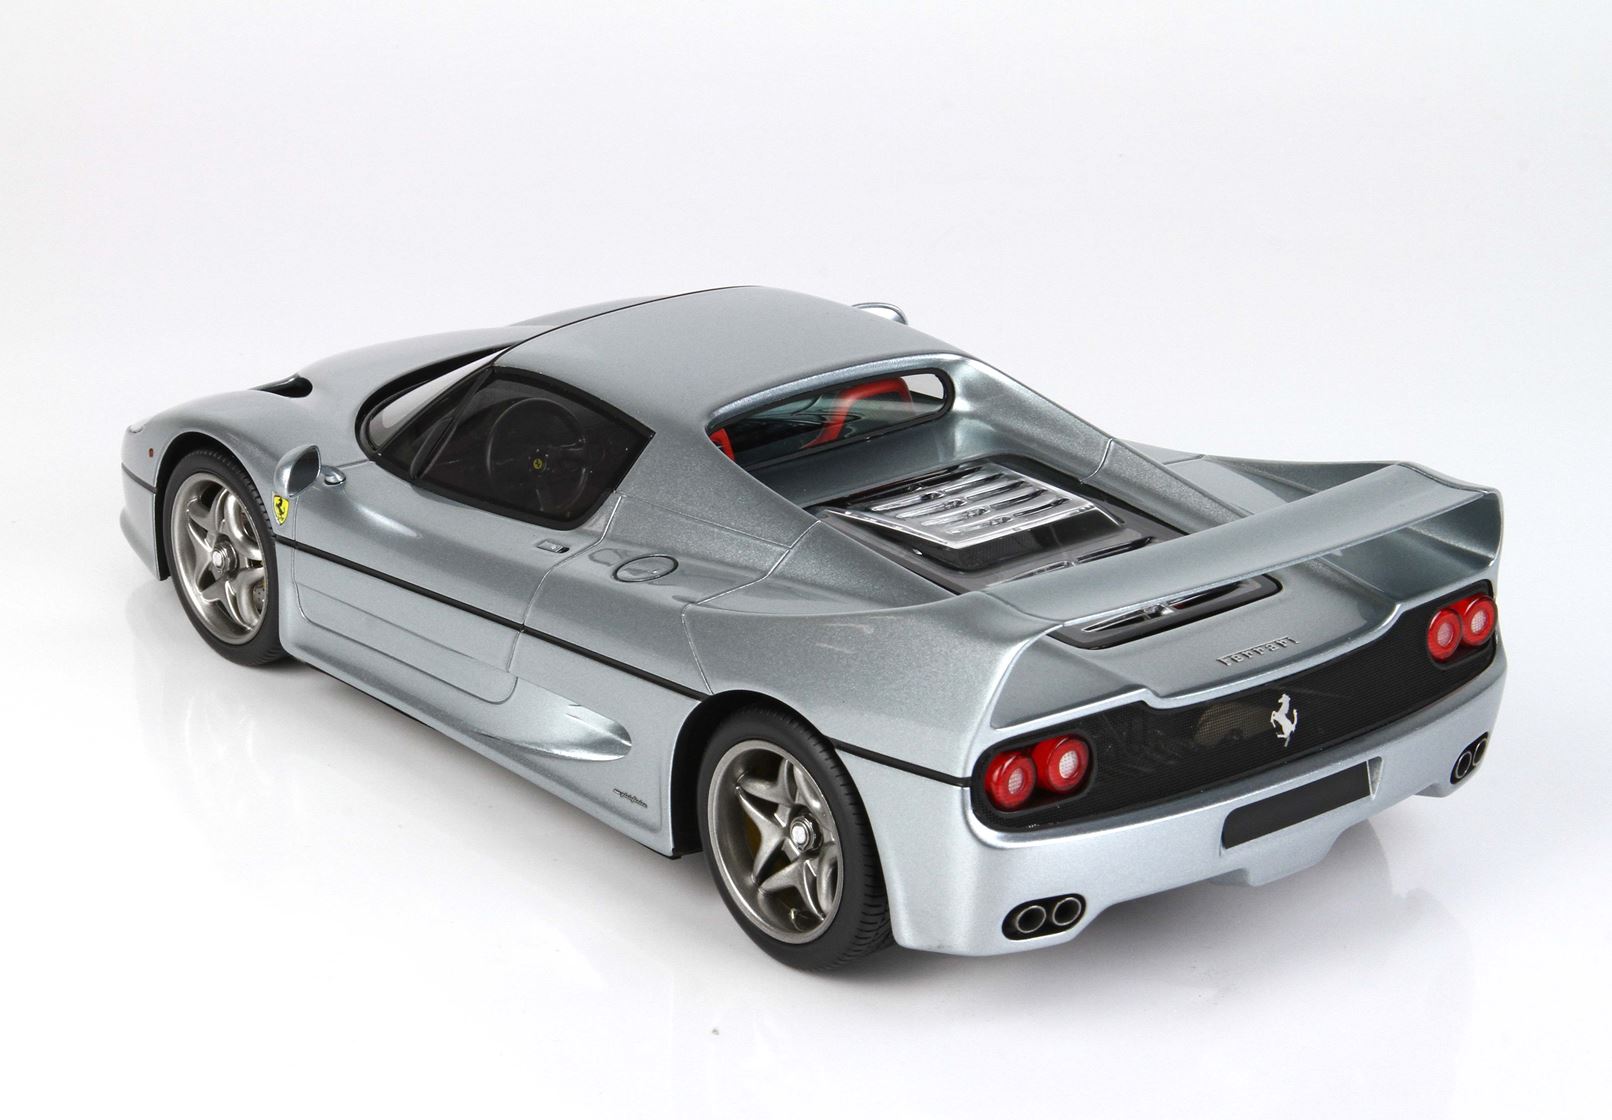 BBR Ferrari F50 escala 1:18 Metalico Gris Titanio